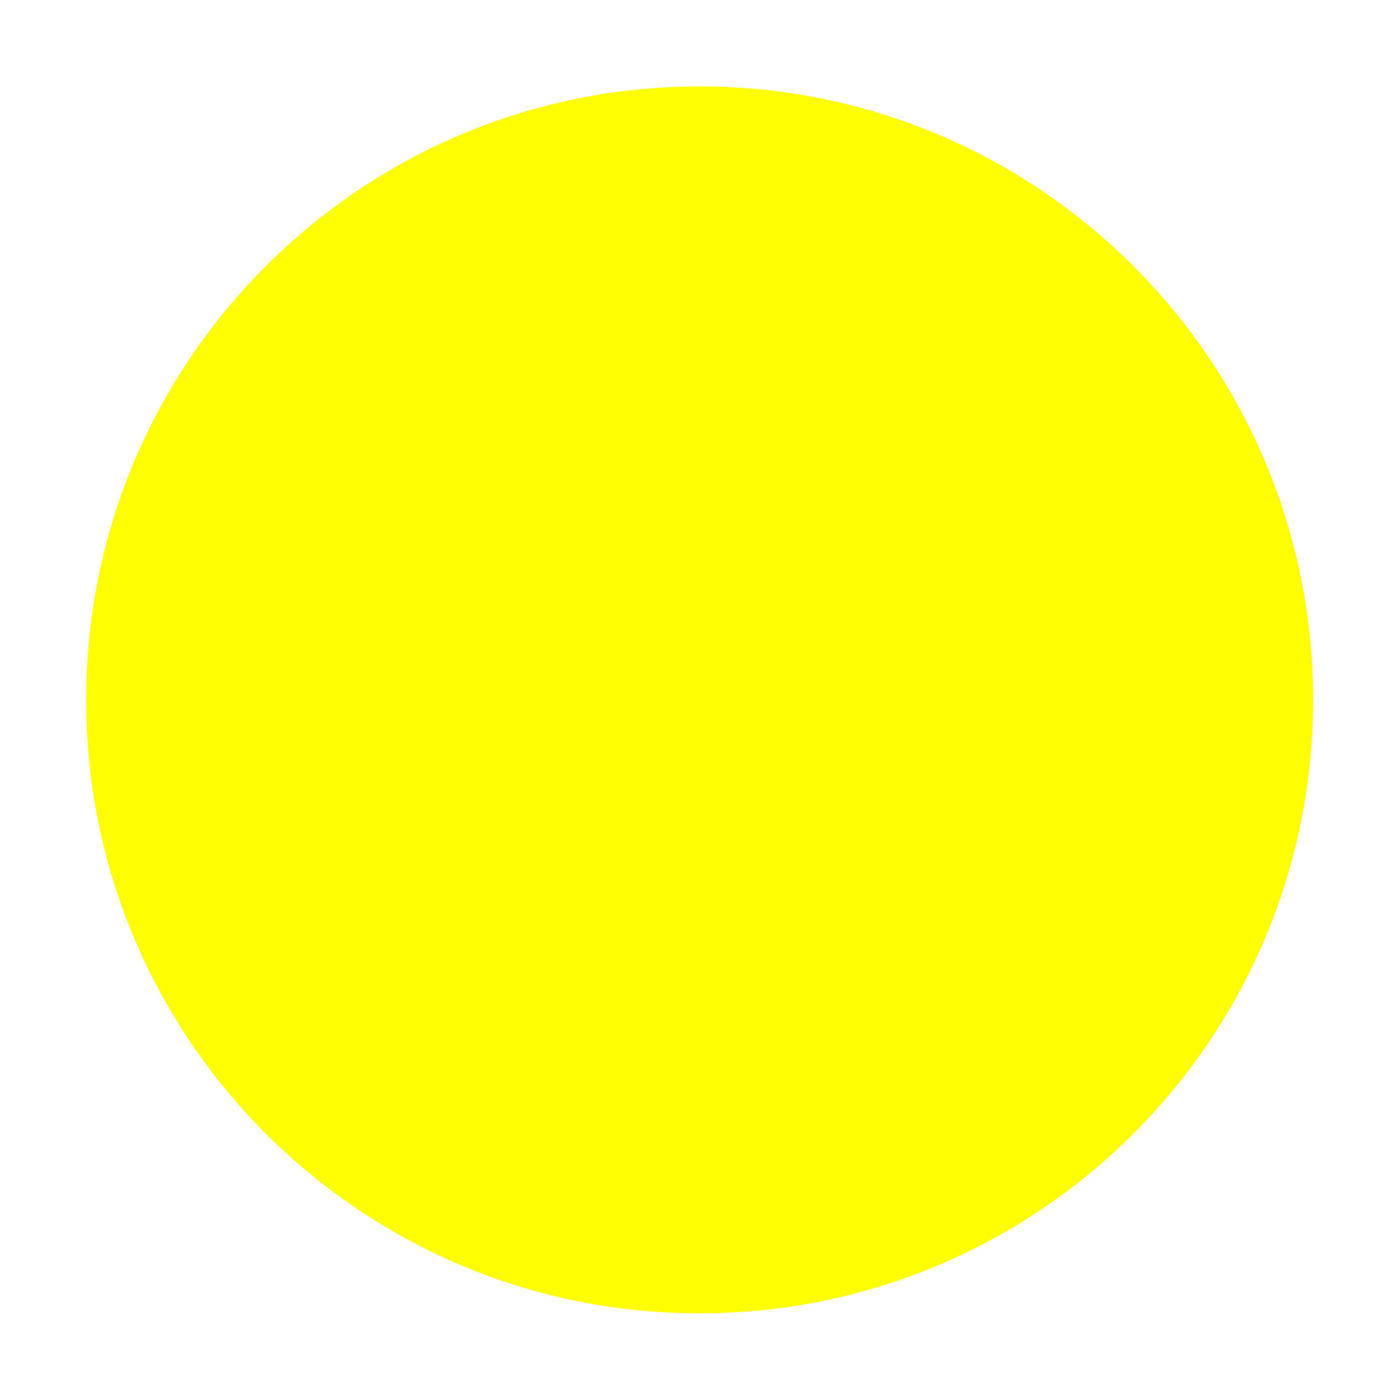 Круг желтый лист. Смайлик желтый круг. Наклейка желтый круг на дверь. Желтый кружок. Желтый круг на черном фоне.